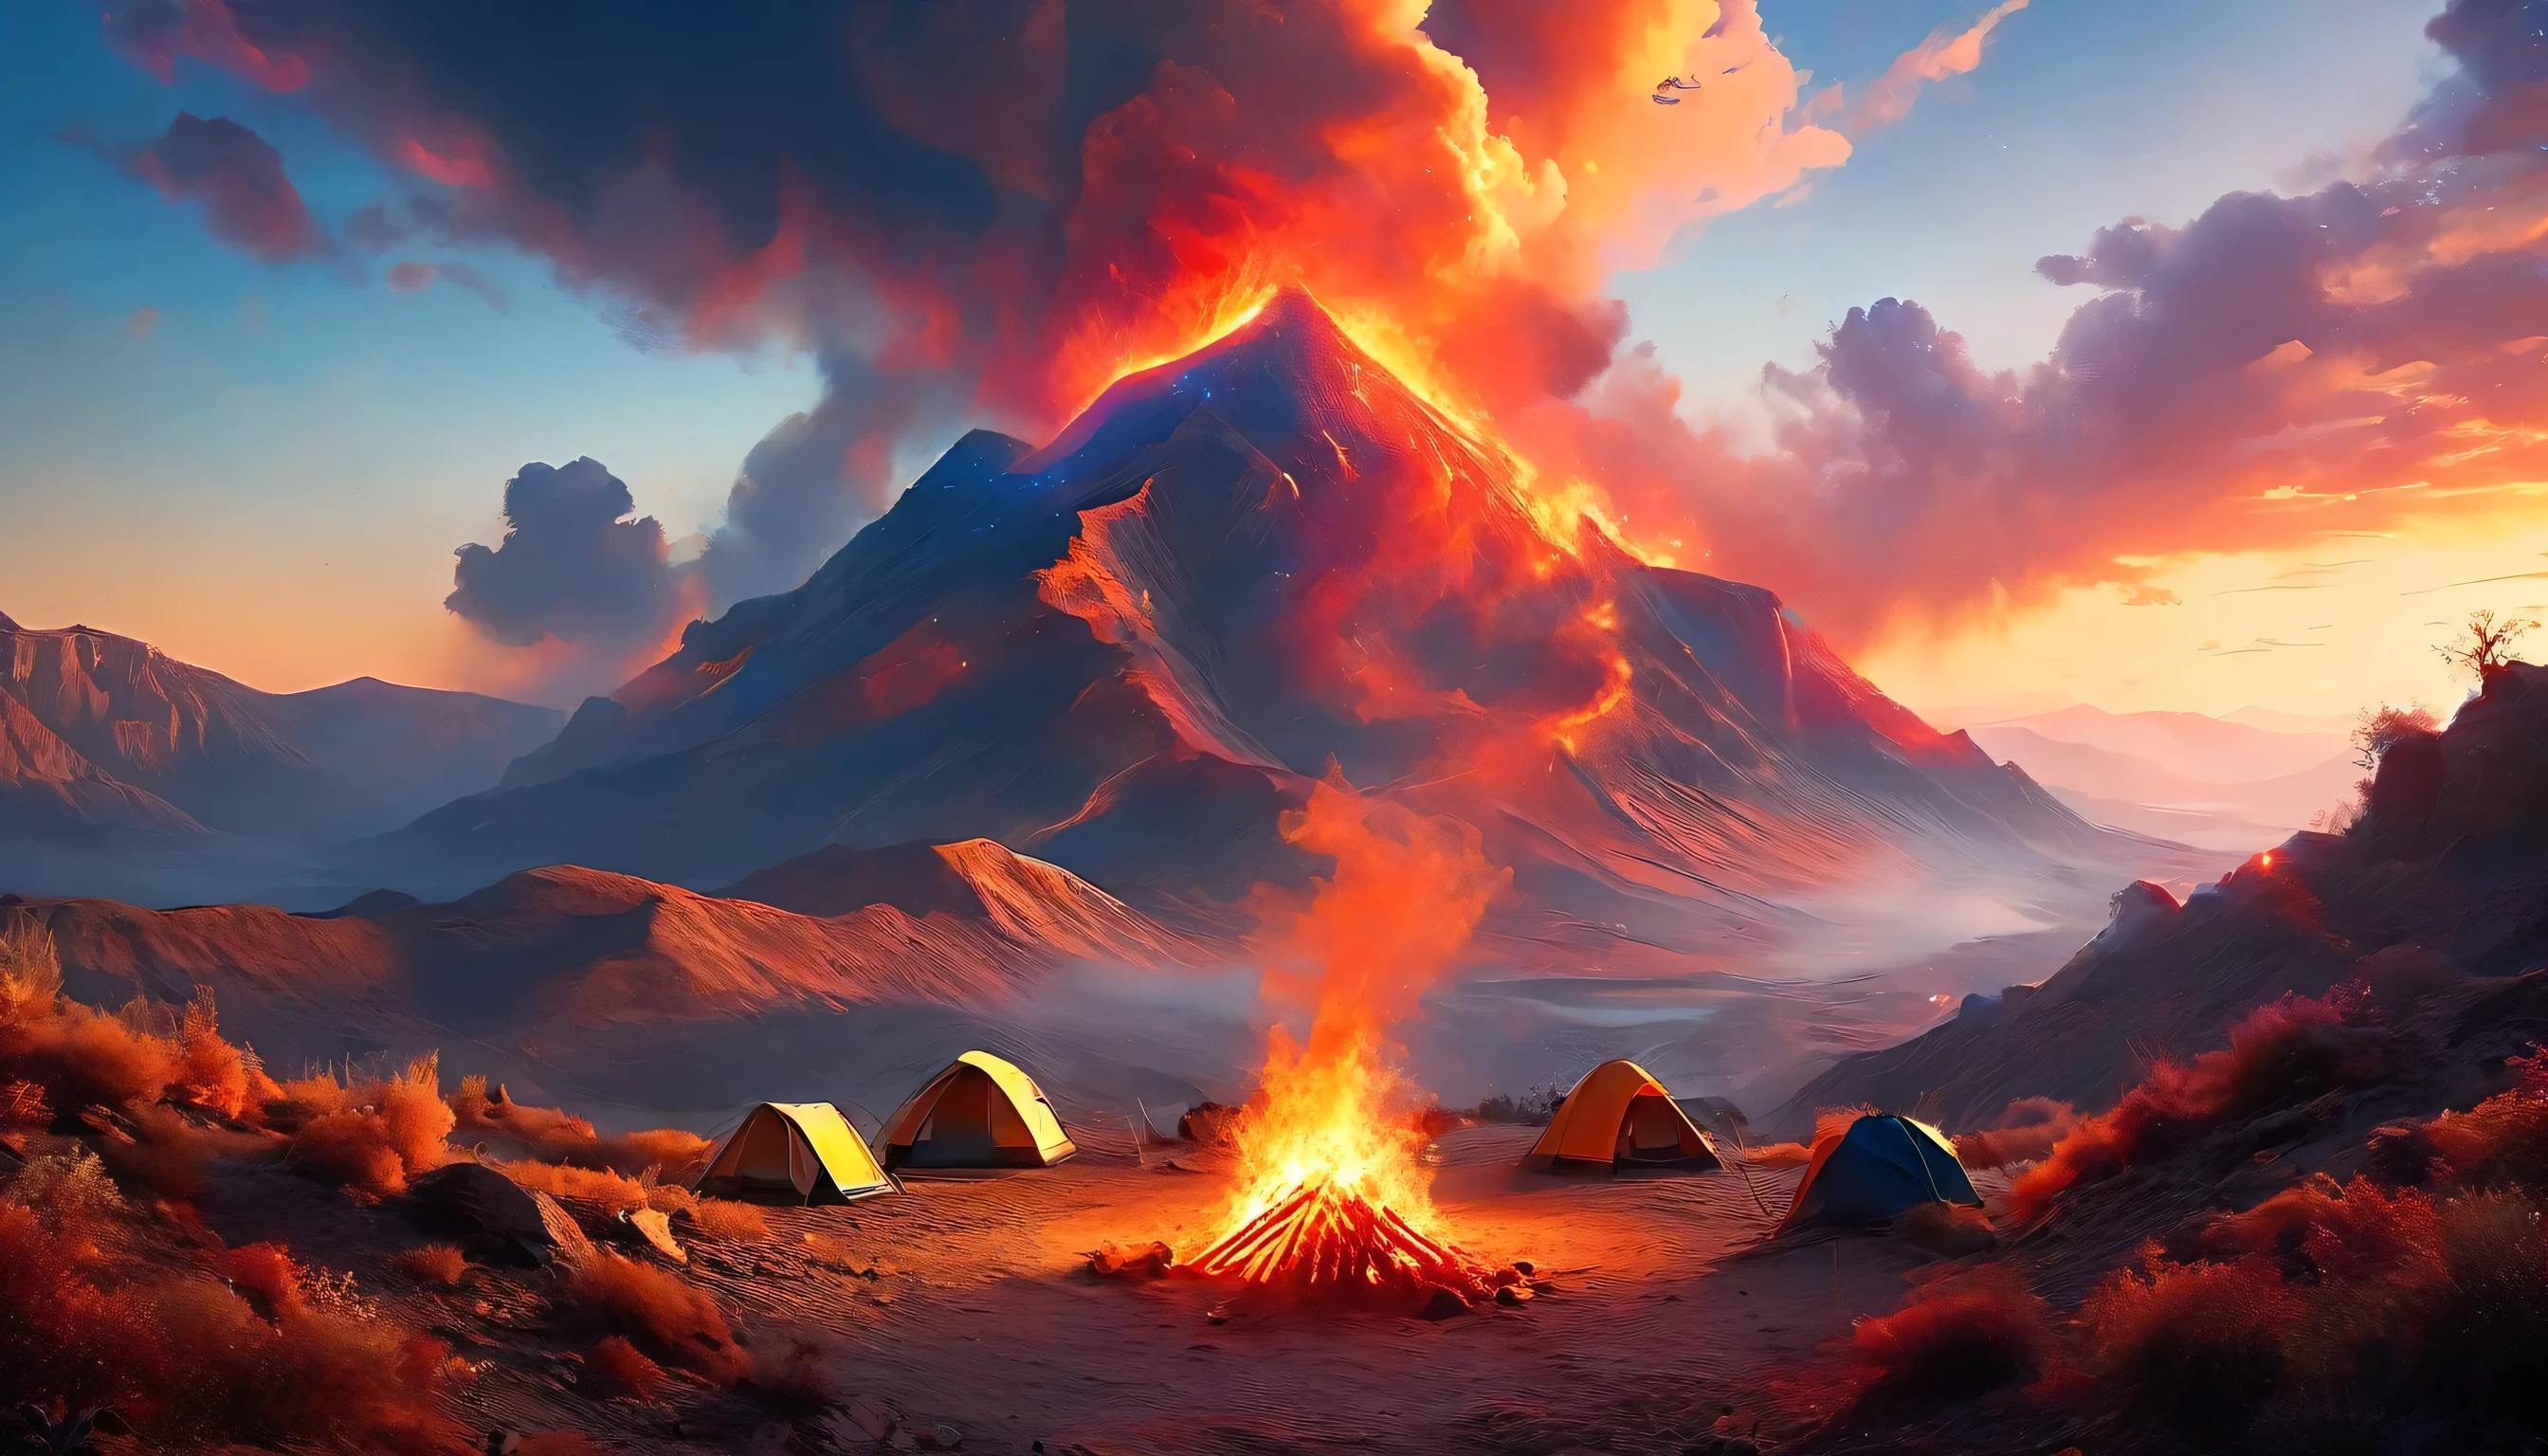 Arafed, una foto de un camping (carpa: 1.2) y pequeña (hoguera: 1,2), en la cima de una montaña desértica, su puesta de sol el cielo está en varios tonos de  (rojo: 1.1), (Naranja: 1.1), (azur: 1.1) (púrpura:1.1) hay humo saliendo del campamento de bomberos, hay una vista magnífica del cañón del desierto y los barrancos., hay pocos árboles en el horizonte, es un tiempo de serenidad, paz, y relajación, mejor calidad, 16k,  photorealism, Sesión de fotos ganadora del premio National Geographic, tiro ultra amplio, Nebulosa furiosa, damasombra